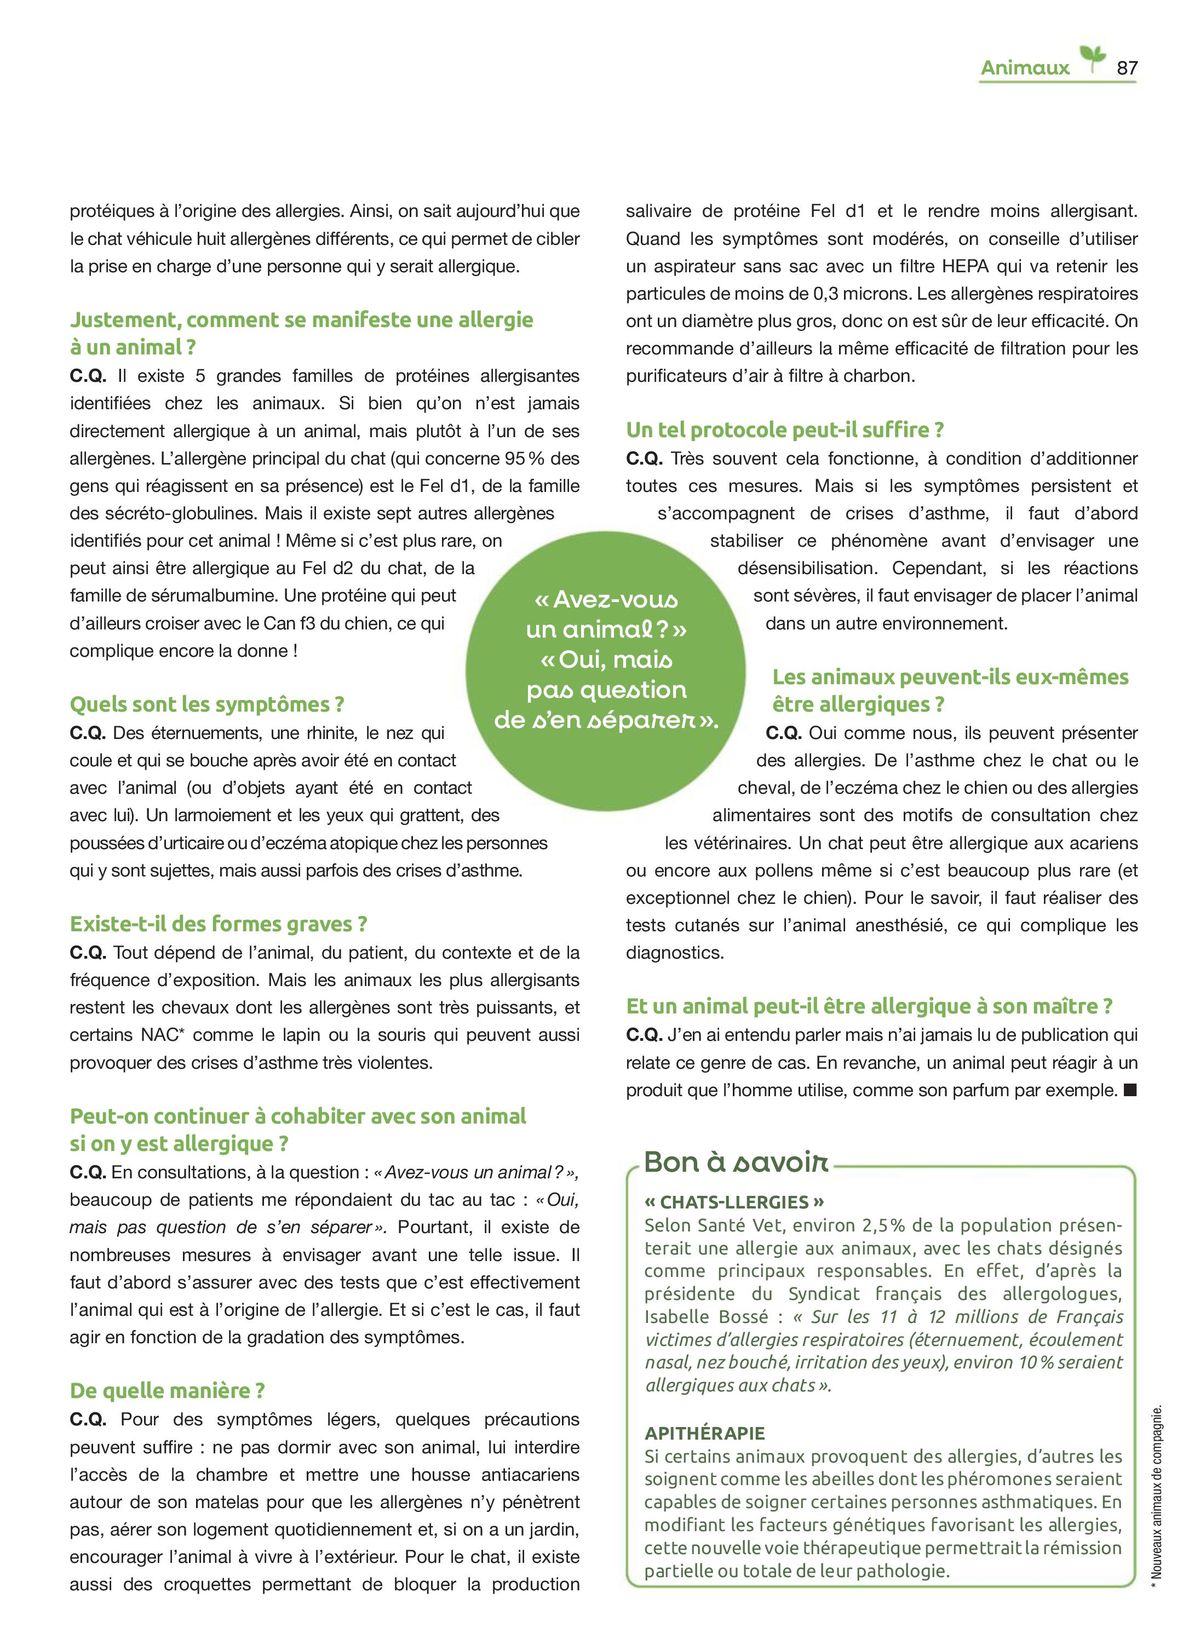 Catalogue Feuilletez Entre Voisins, page 00087